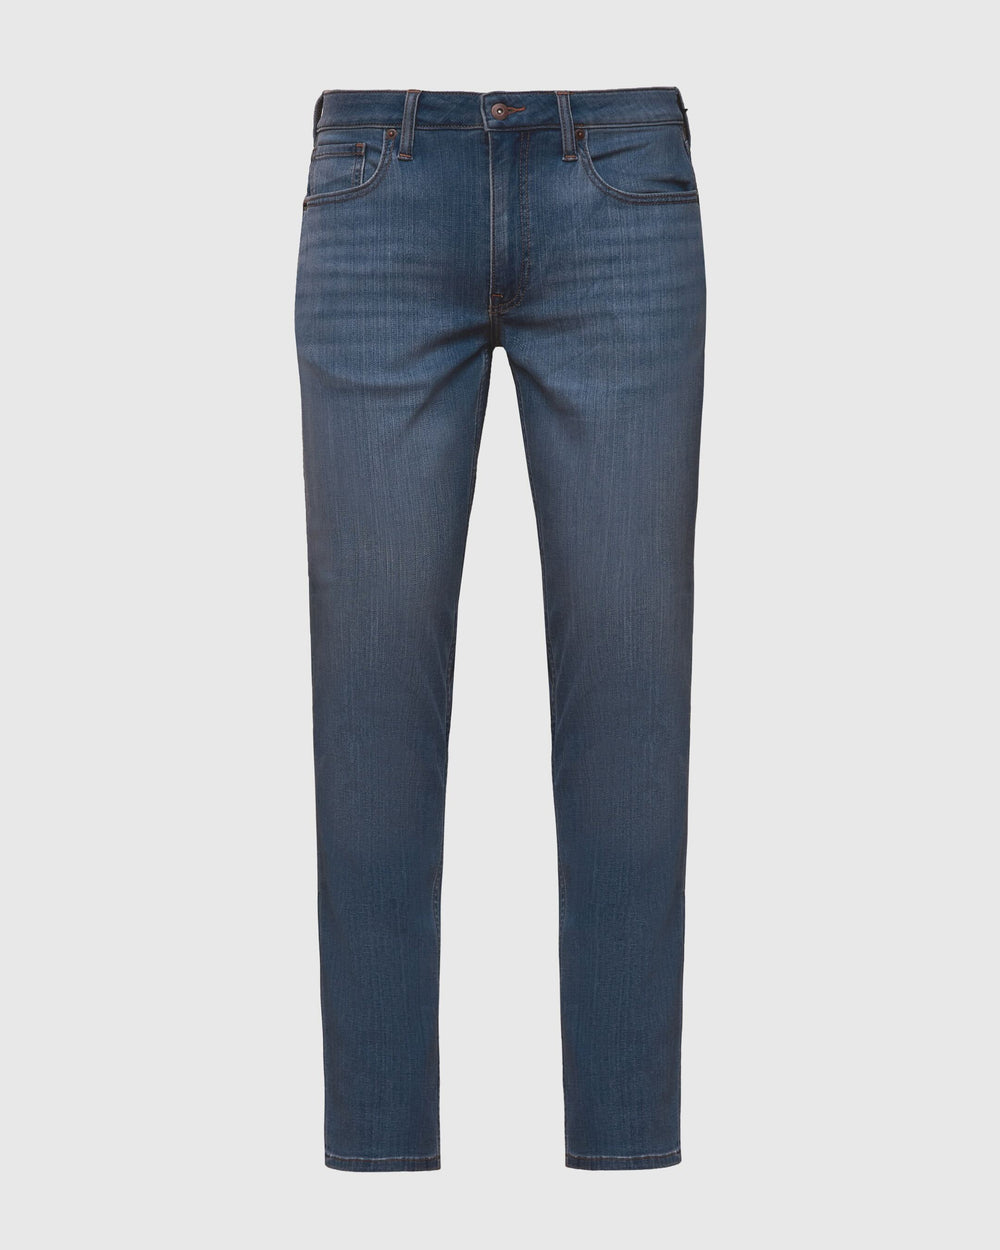 Medium Indigo Wash Slim Fit Comfort Jeans – True Classic